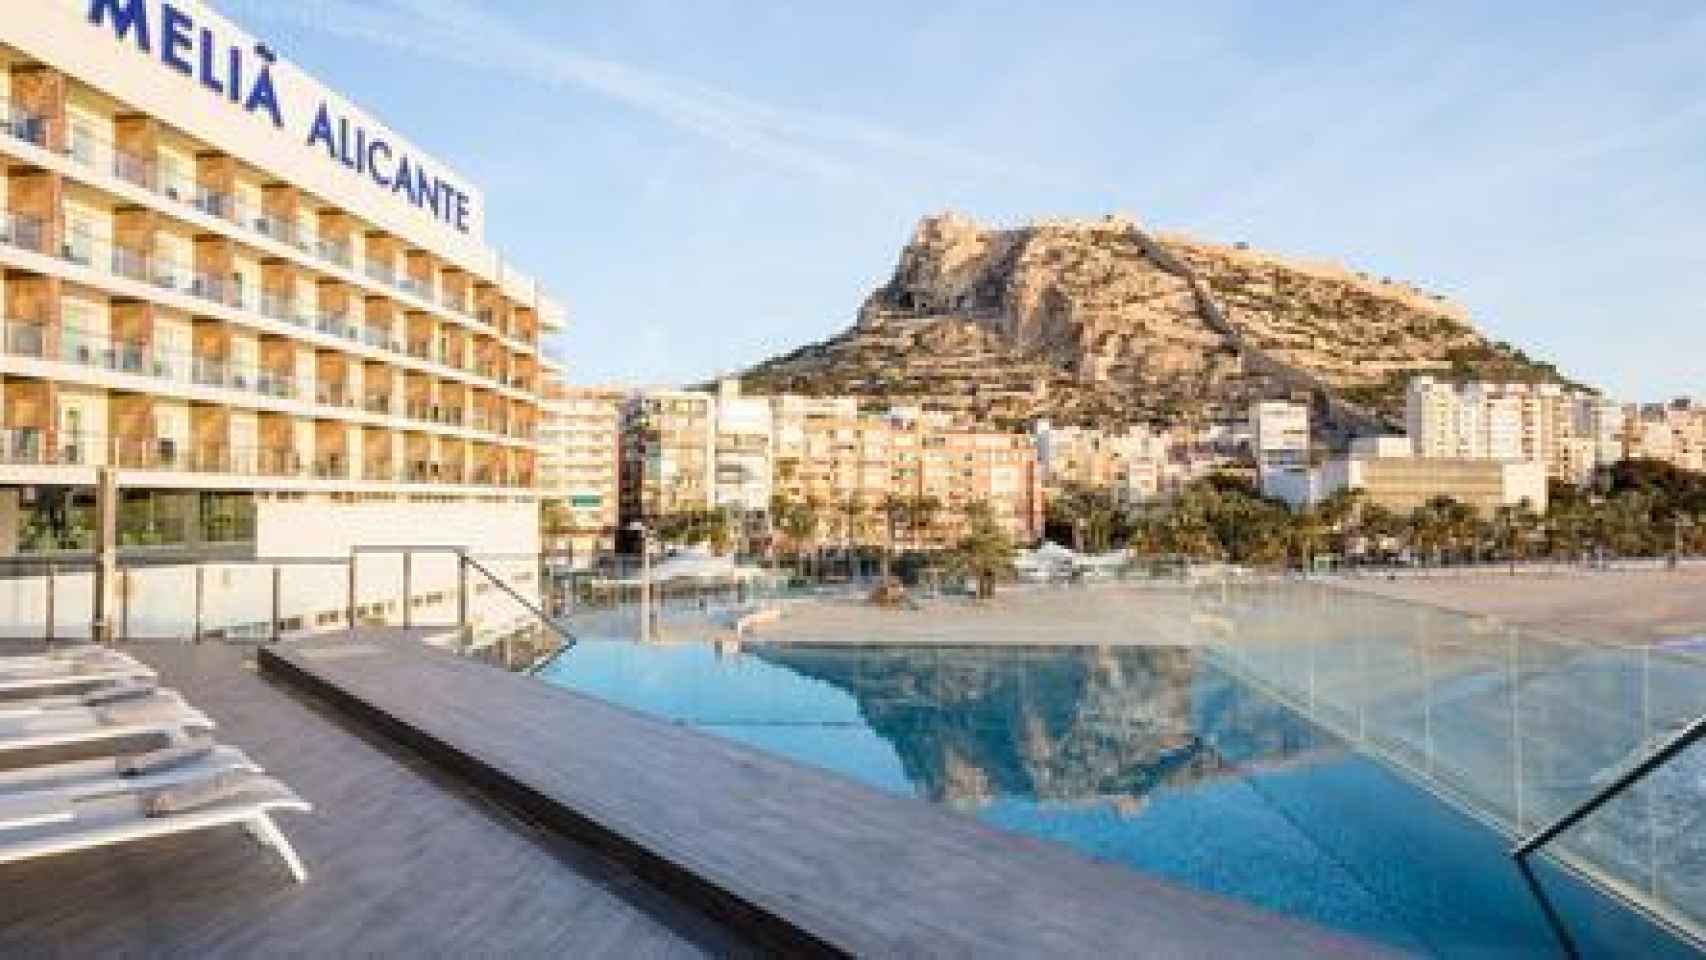 Piscina del Hotel Meliá en Alicante.